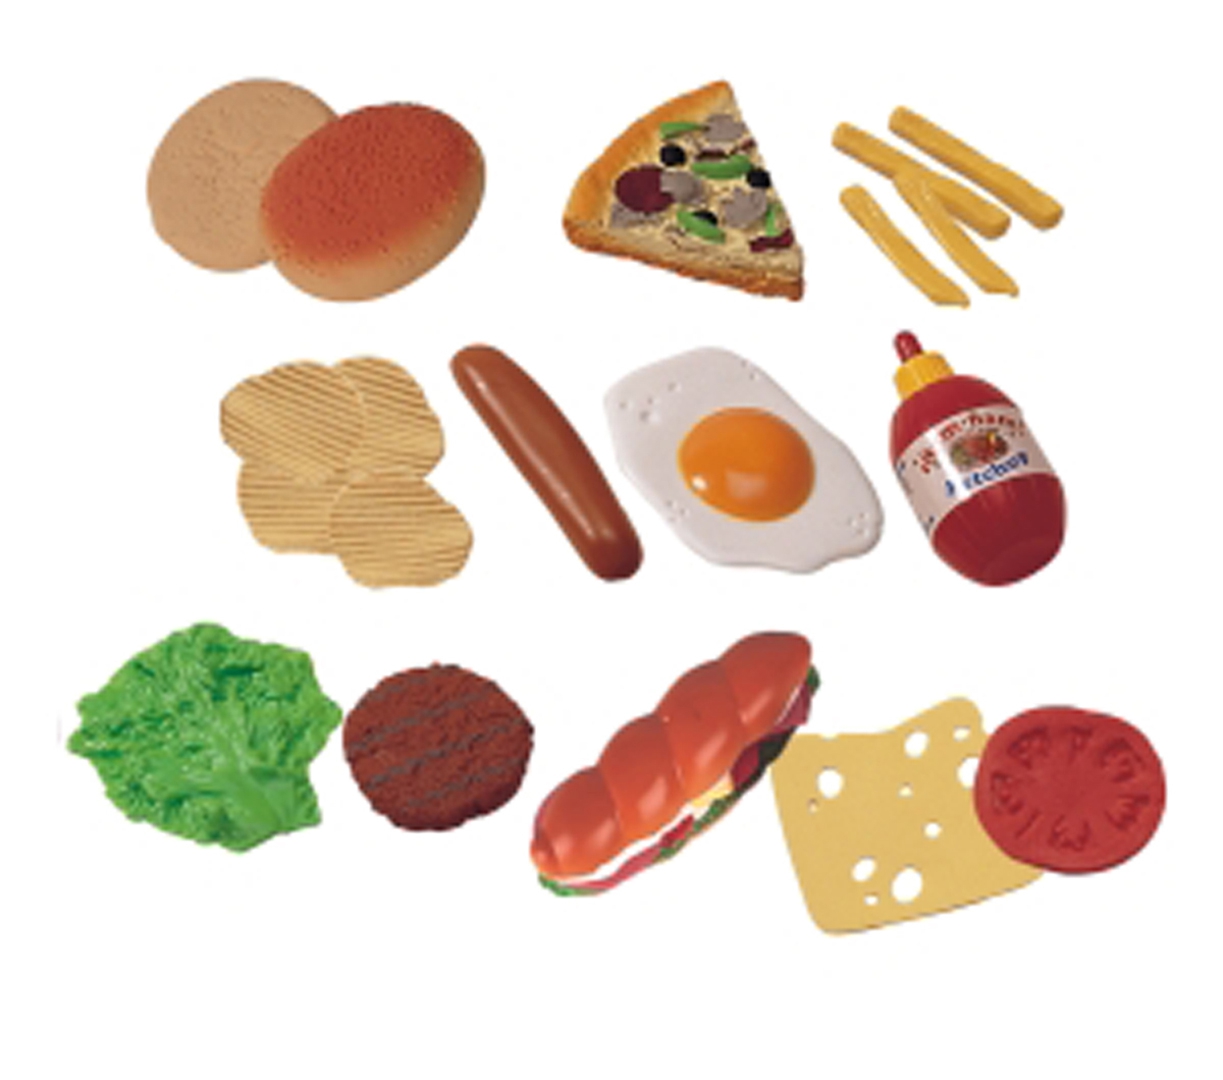 Продукты из пластилина. Игрушечные продукты. Еда из пластилина. Игрушечная еда из пластилина. Продукты из пластилина для детей.